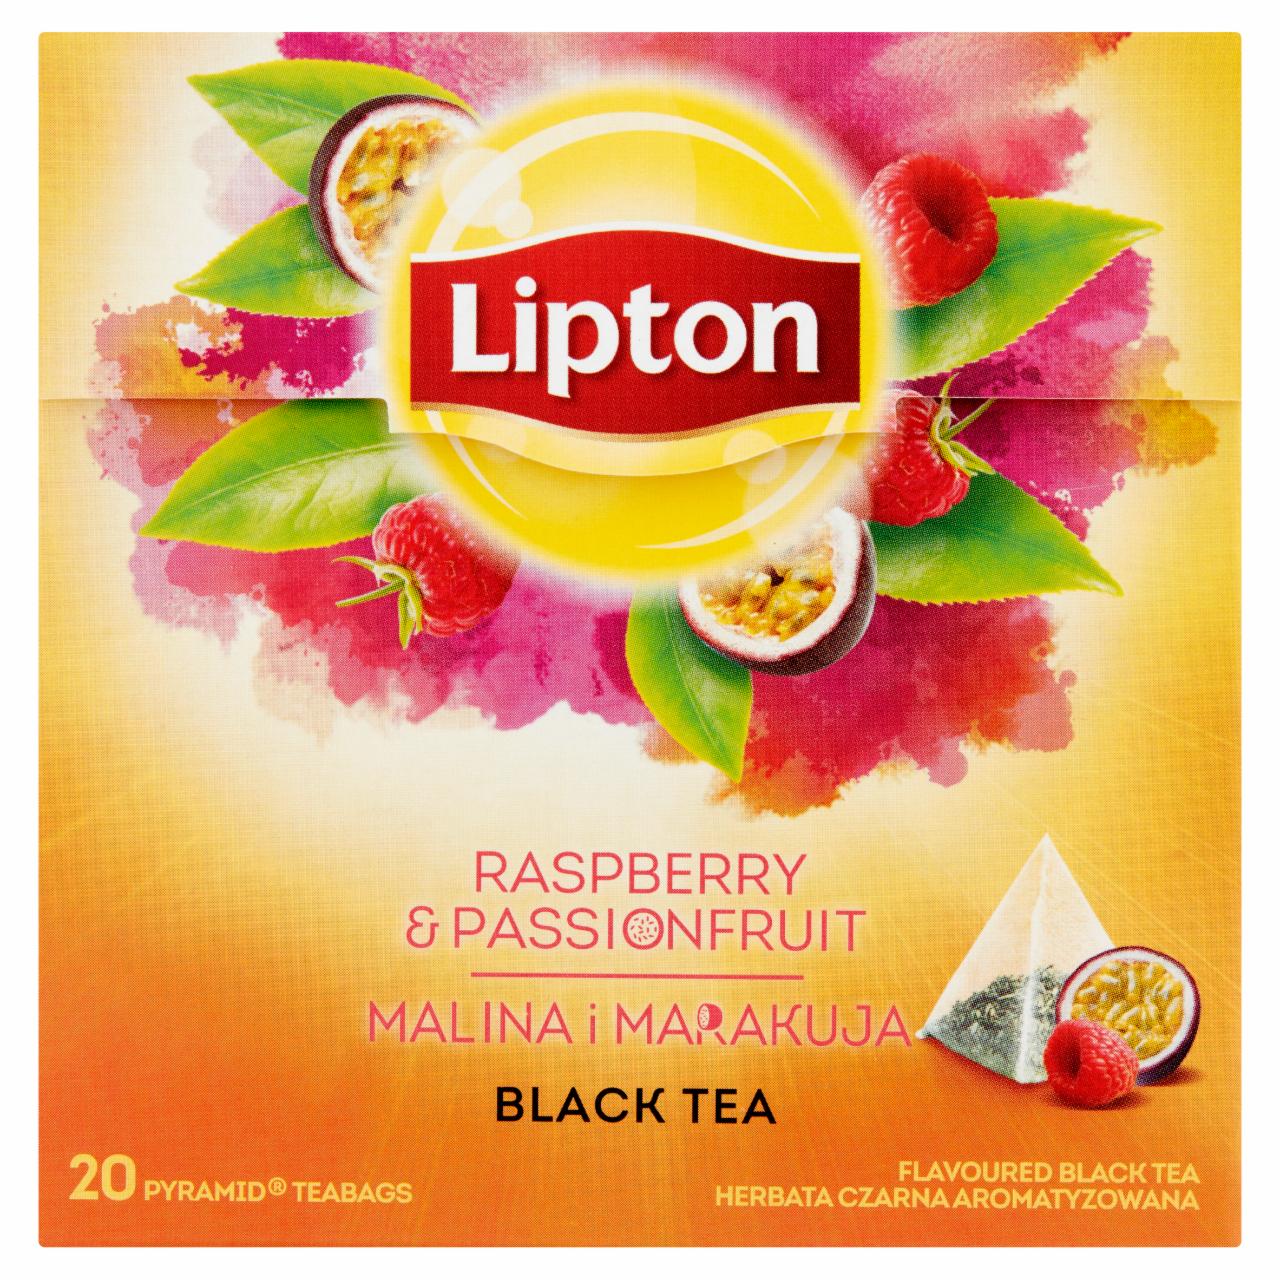 Zdjęcia - Lipton Herbata czarna aromatyzowana malina i marakuja 32 g (20 torebek)